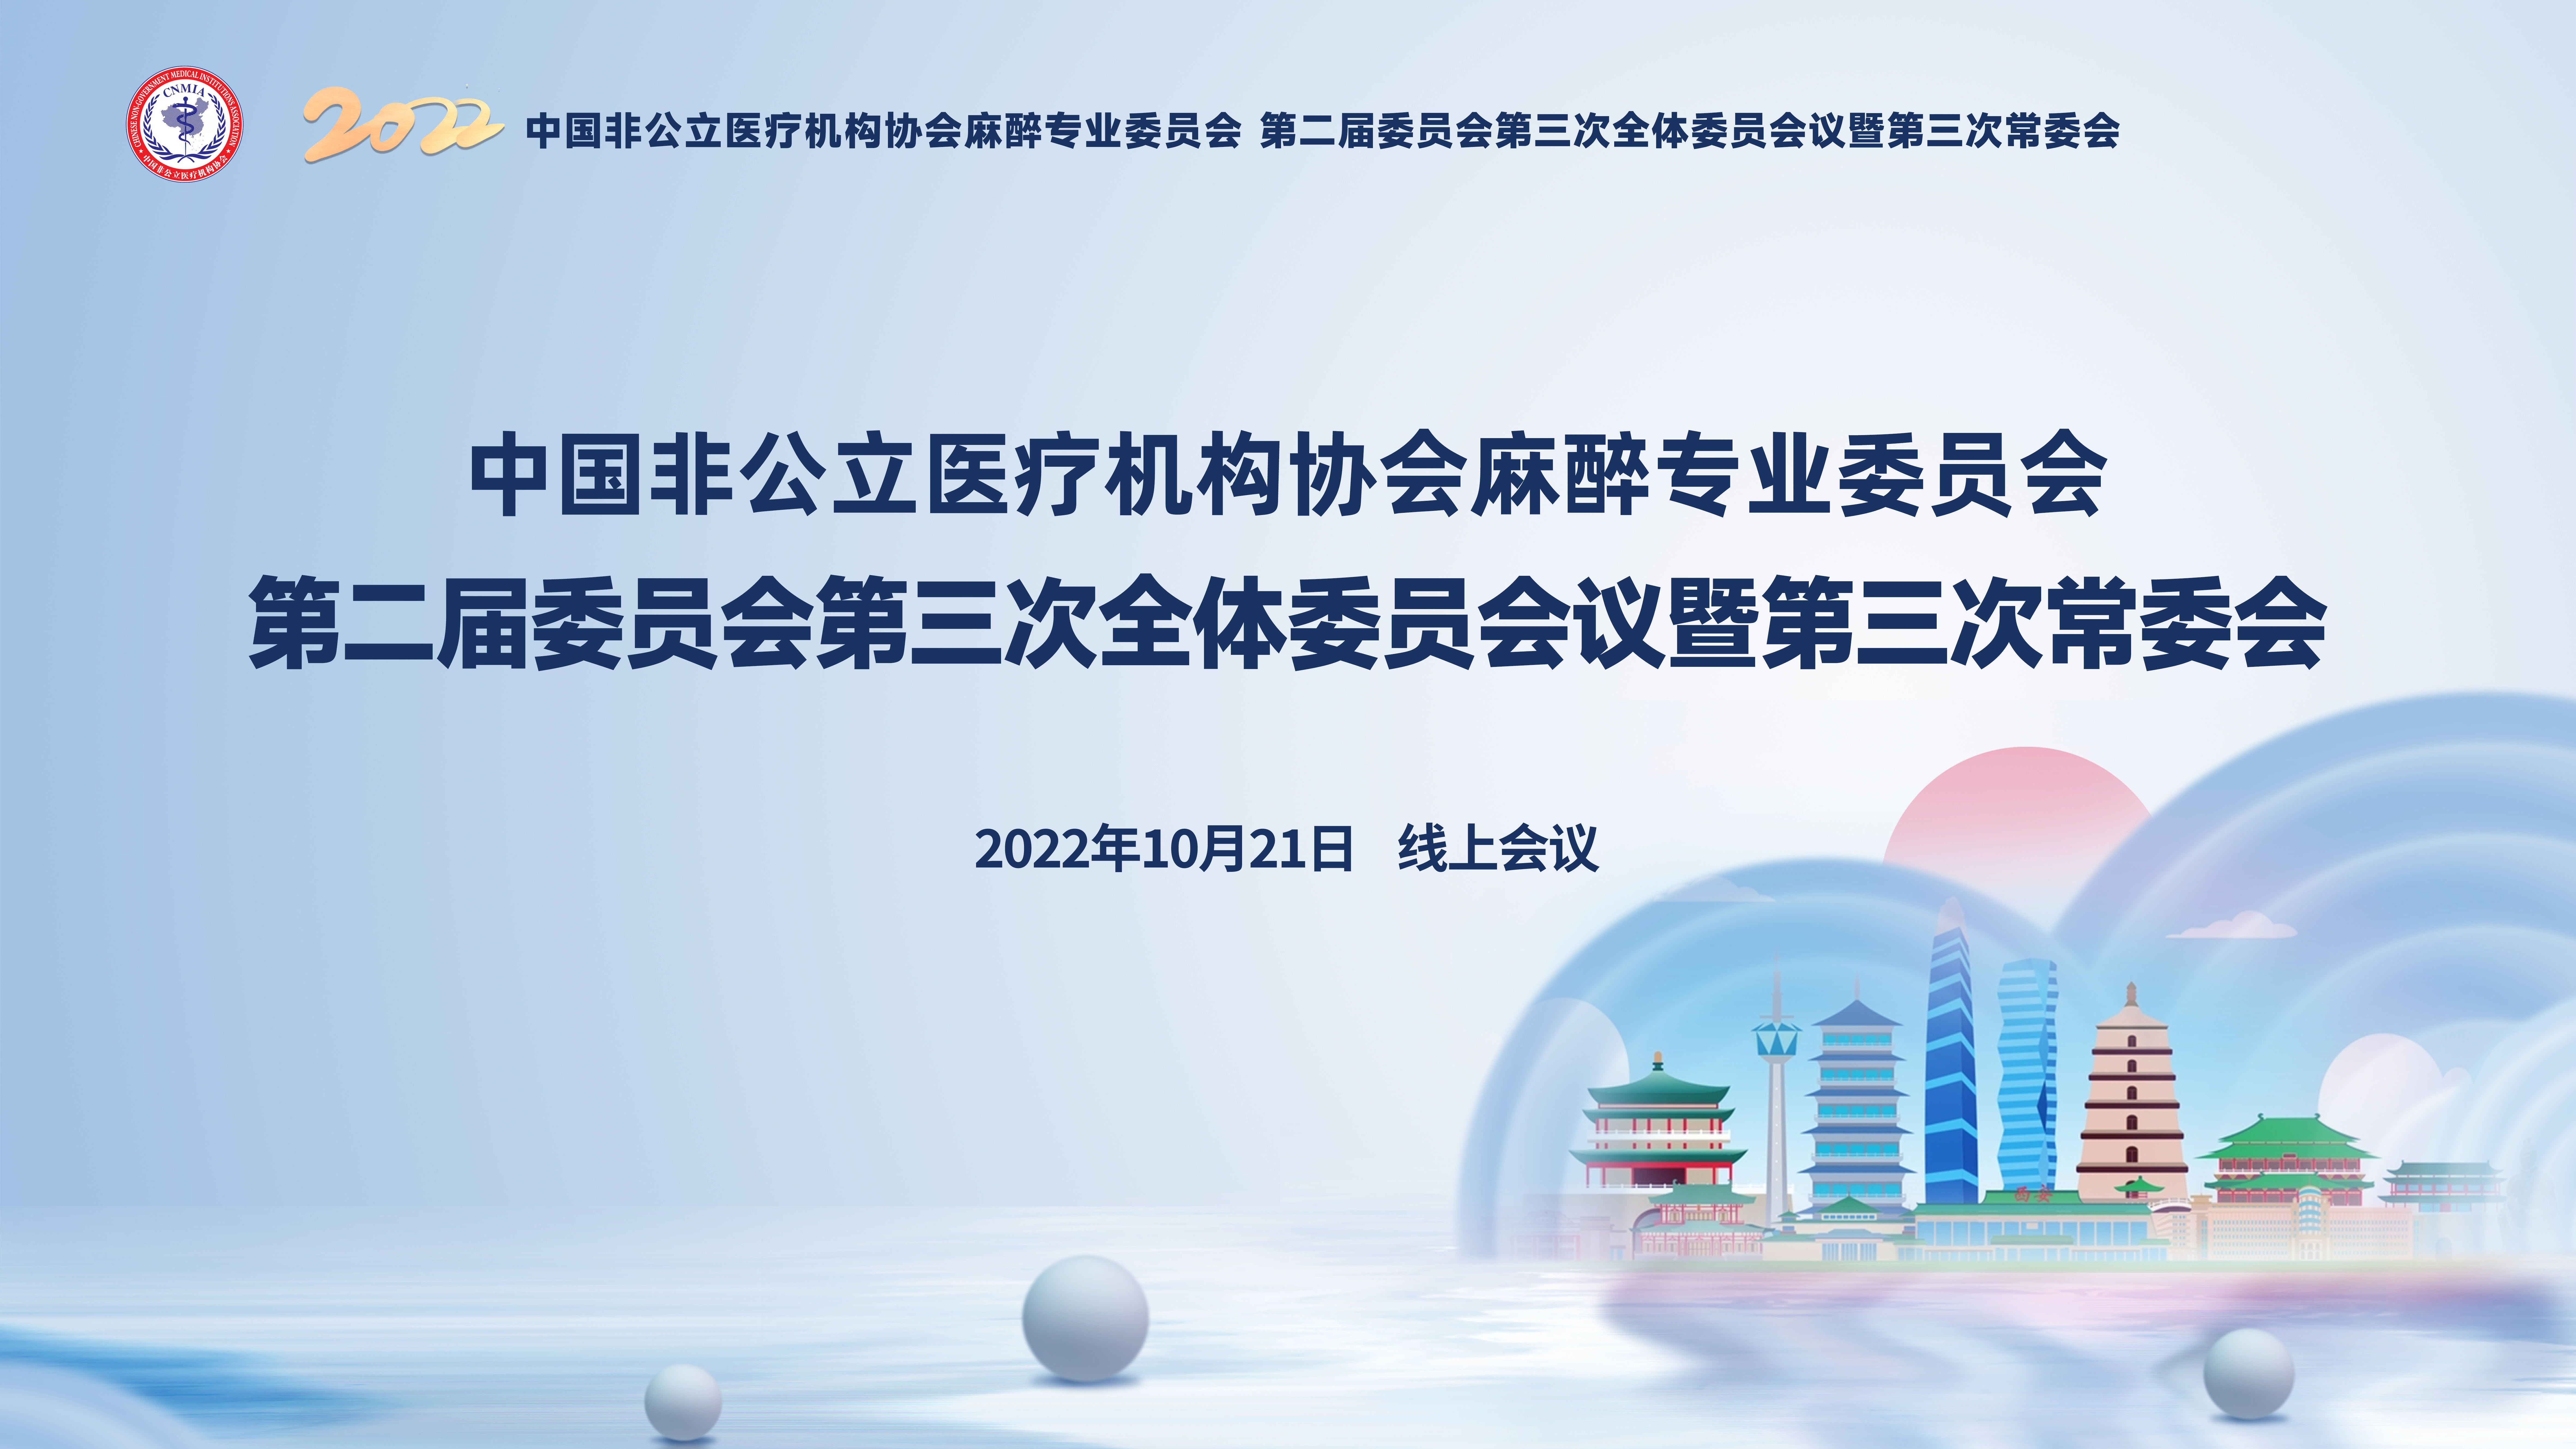 分支机构丨中国非公立医疗机构协会麻醉专业委员会2022年学术年会成功举办